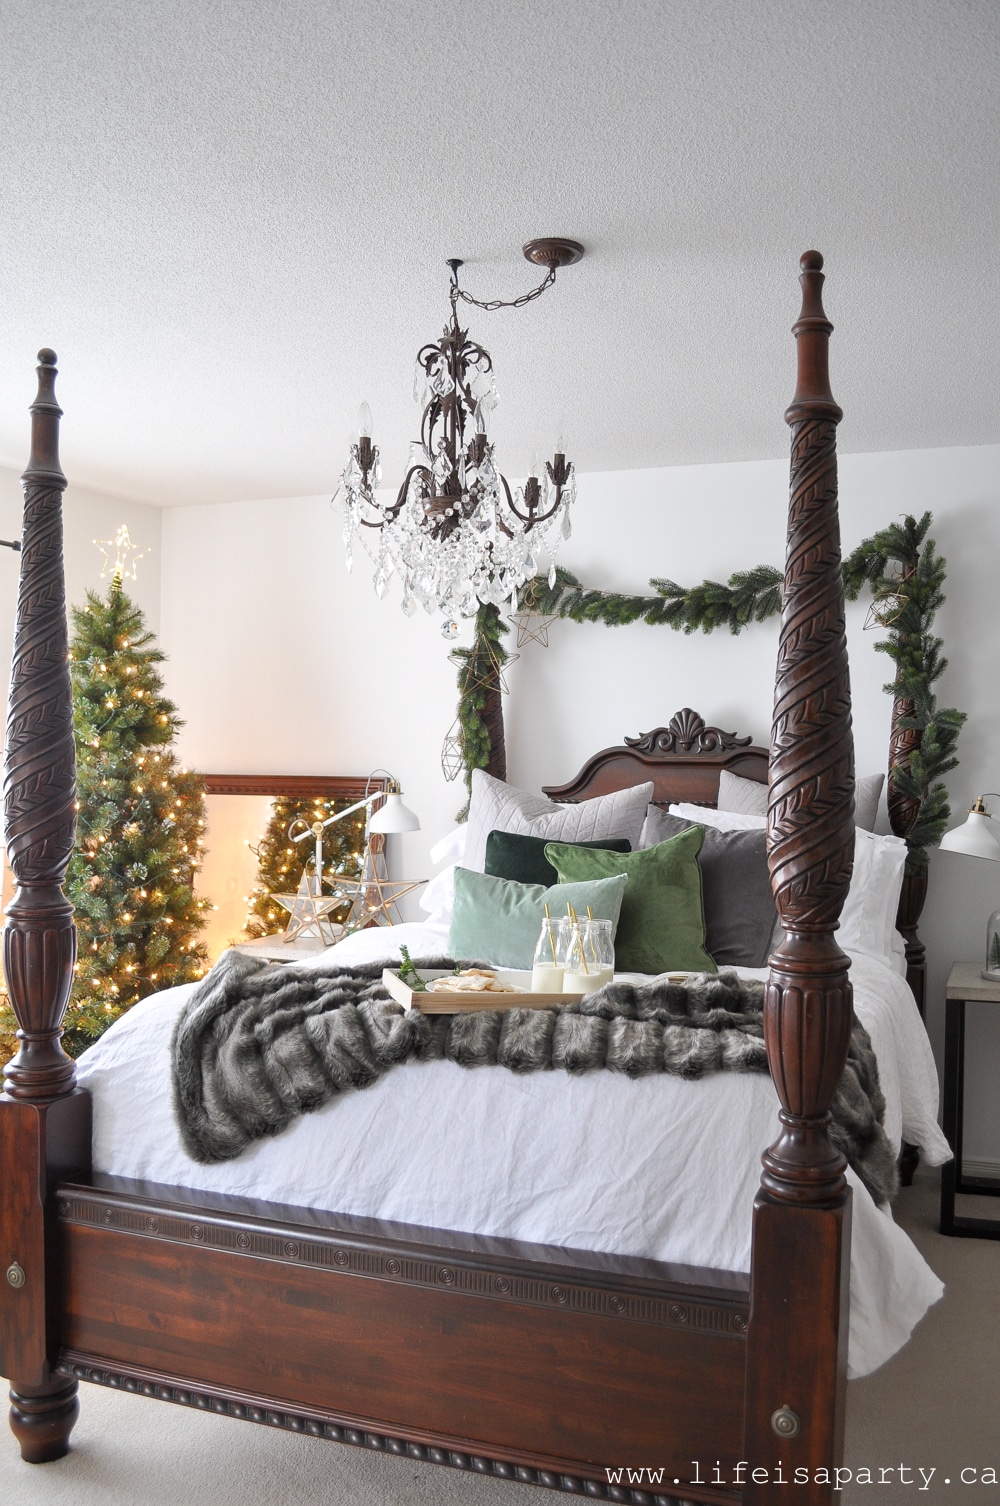 Christmas bedroom ideas